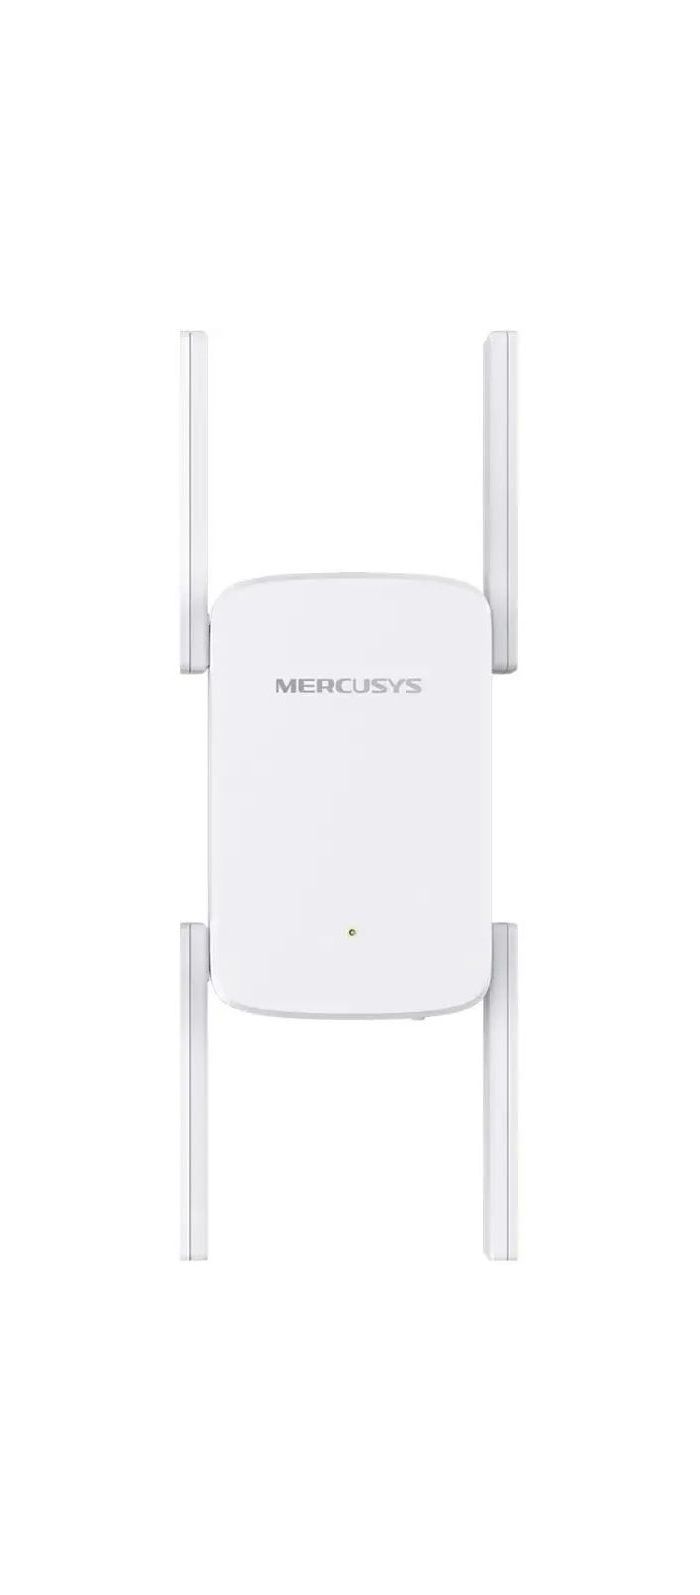 Усилитель Wi-Fi сигнала Mercusys ME50G усилитель сигнала mercusys me70x